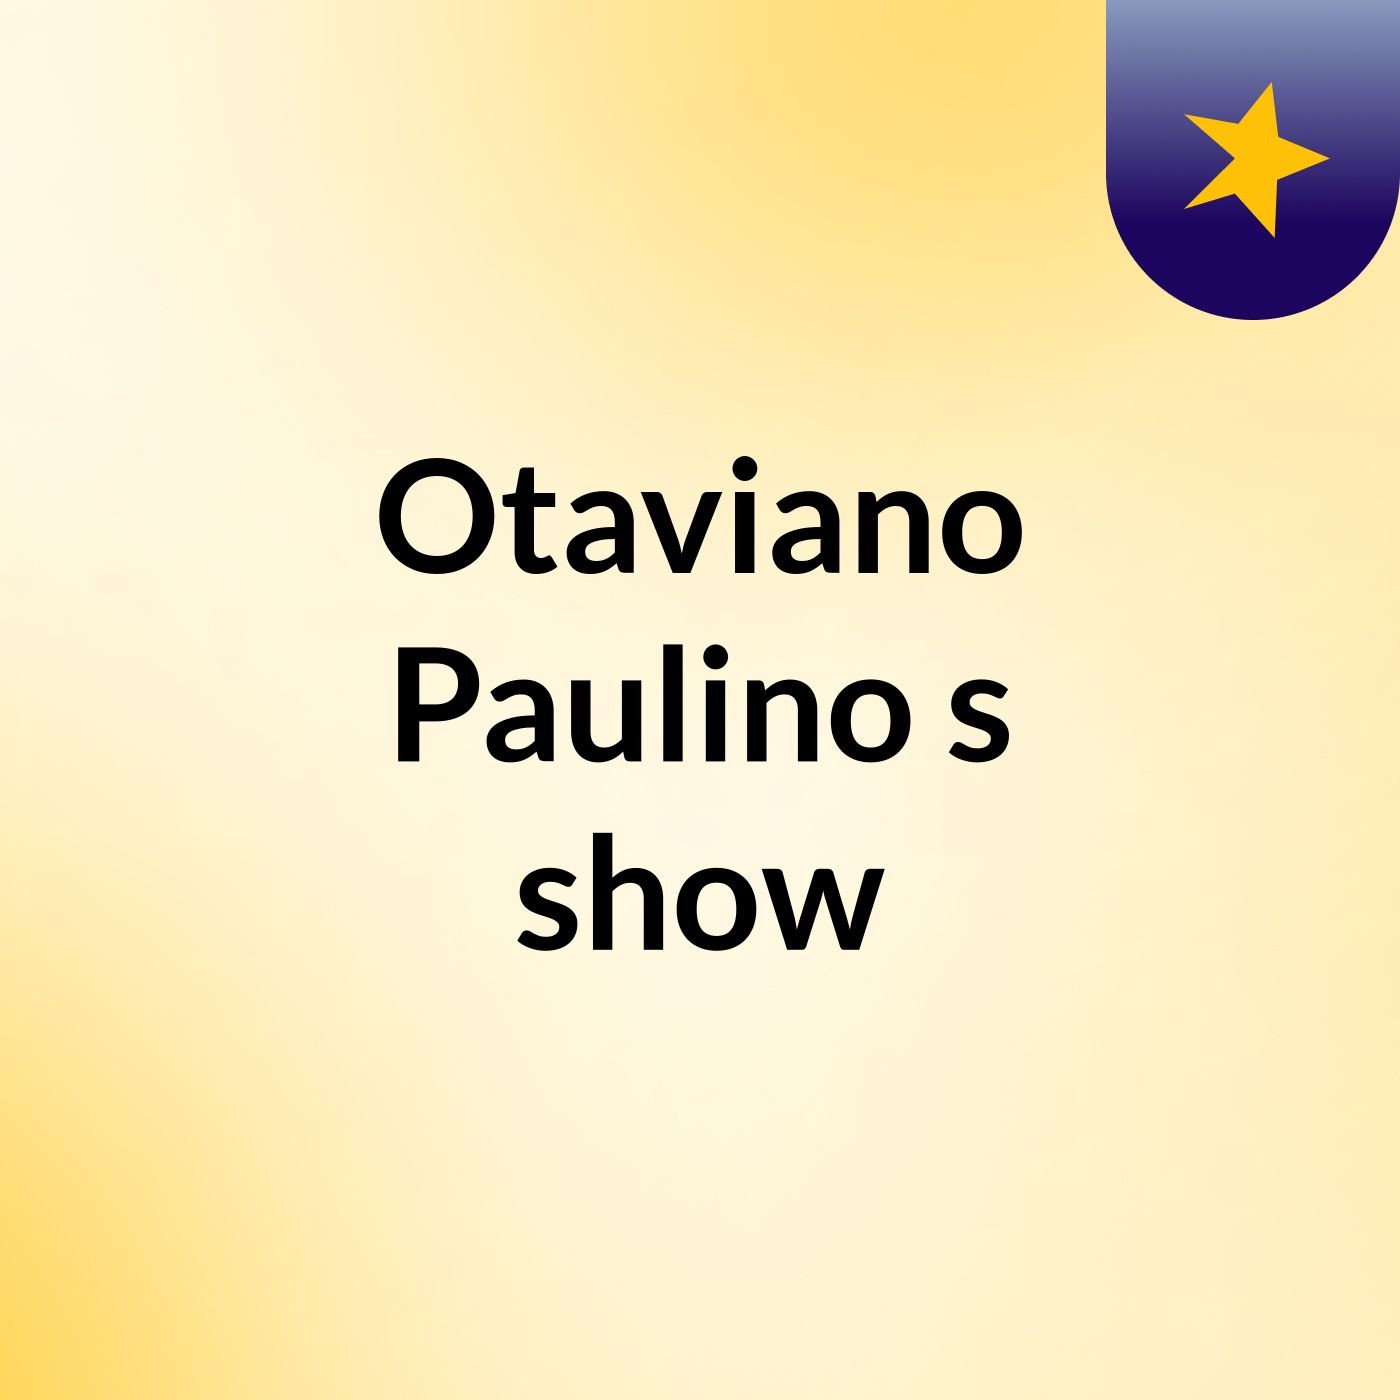 Otaviano Paulino's show